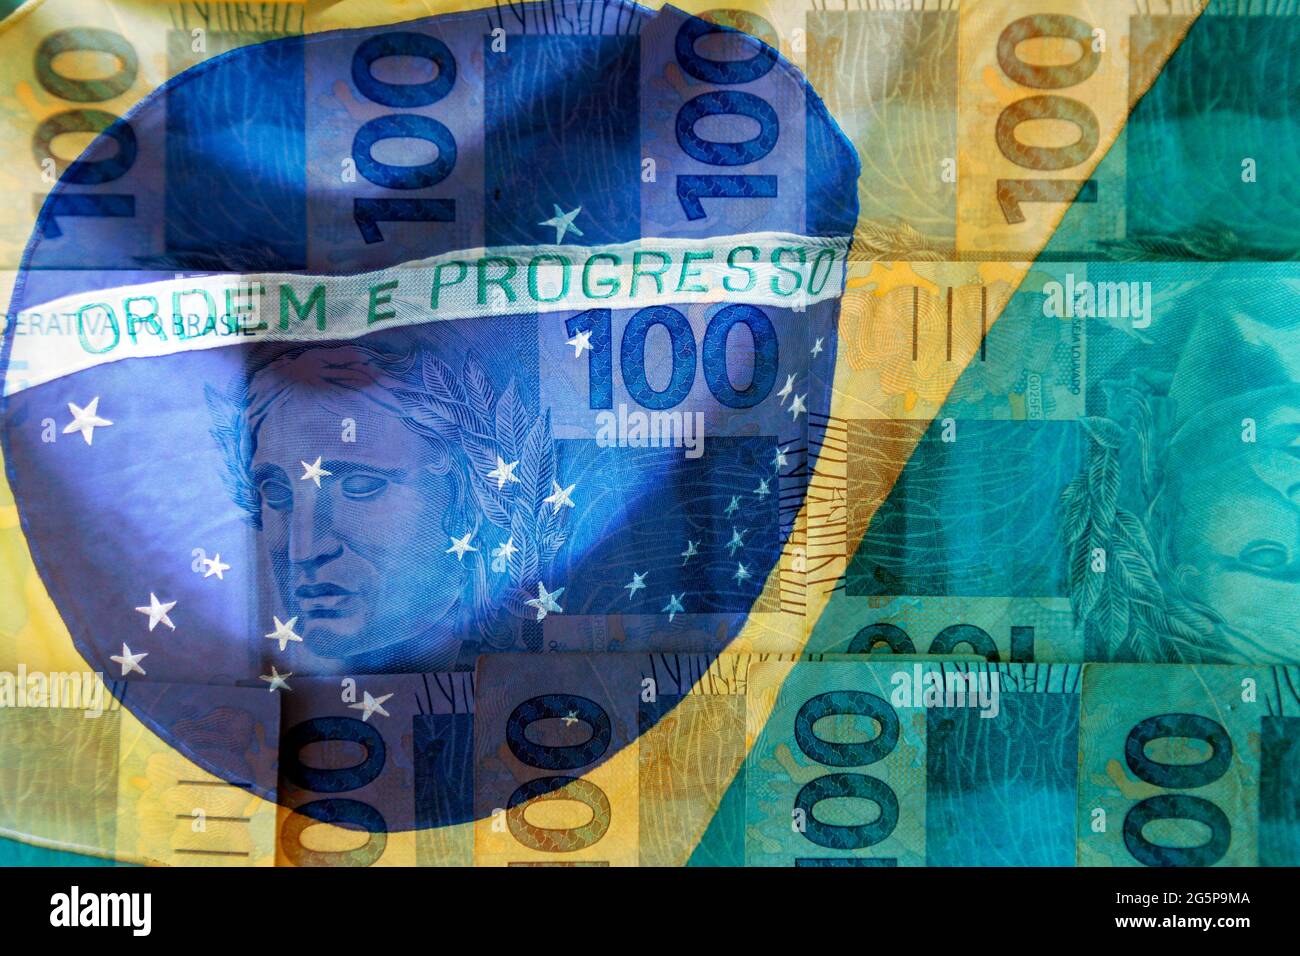 brésil money concept - le drapeau brésilien et une centaine de reais projets de loi fusionnés Banque D'Images